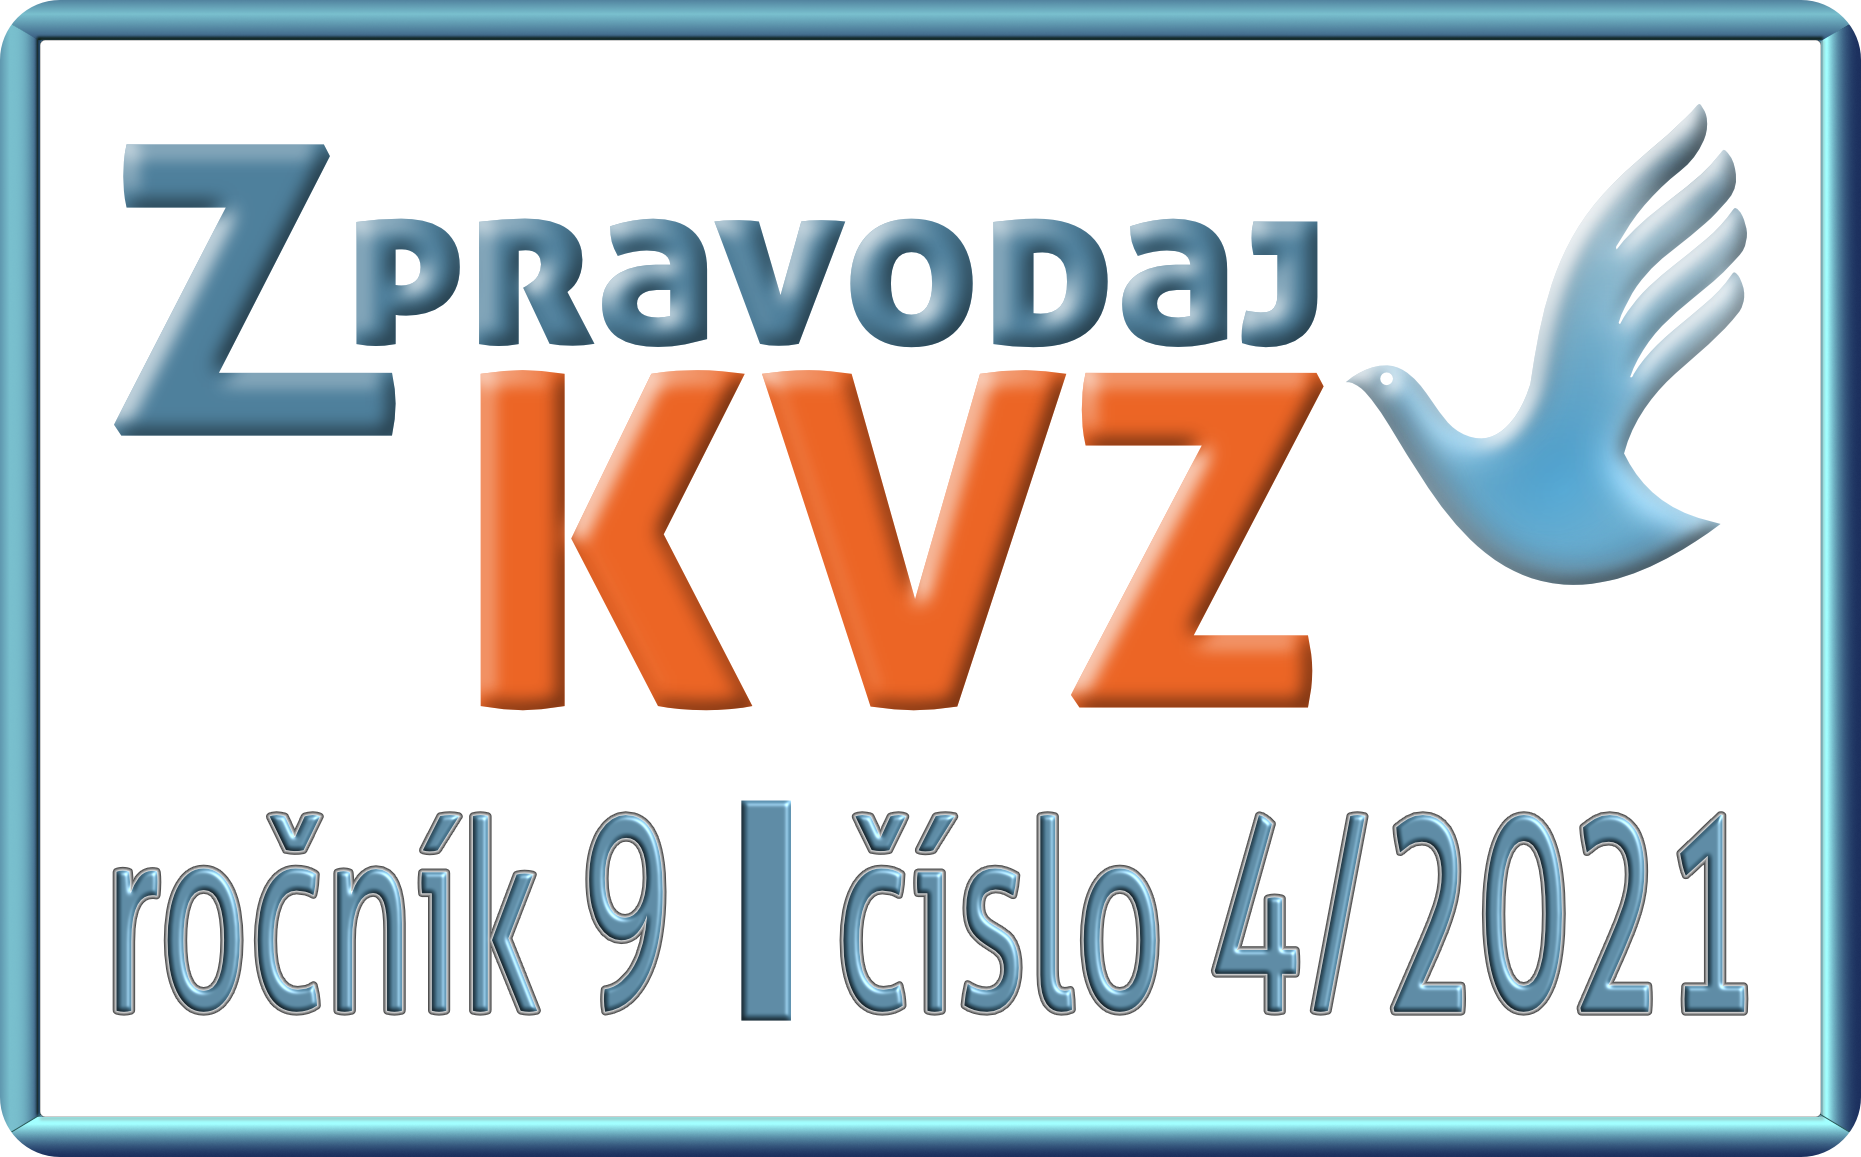 Zpravodaj_KVZ_04_2021